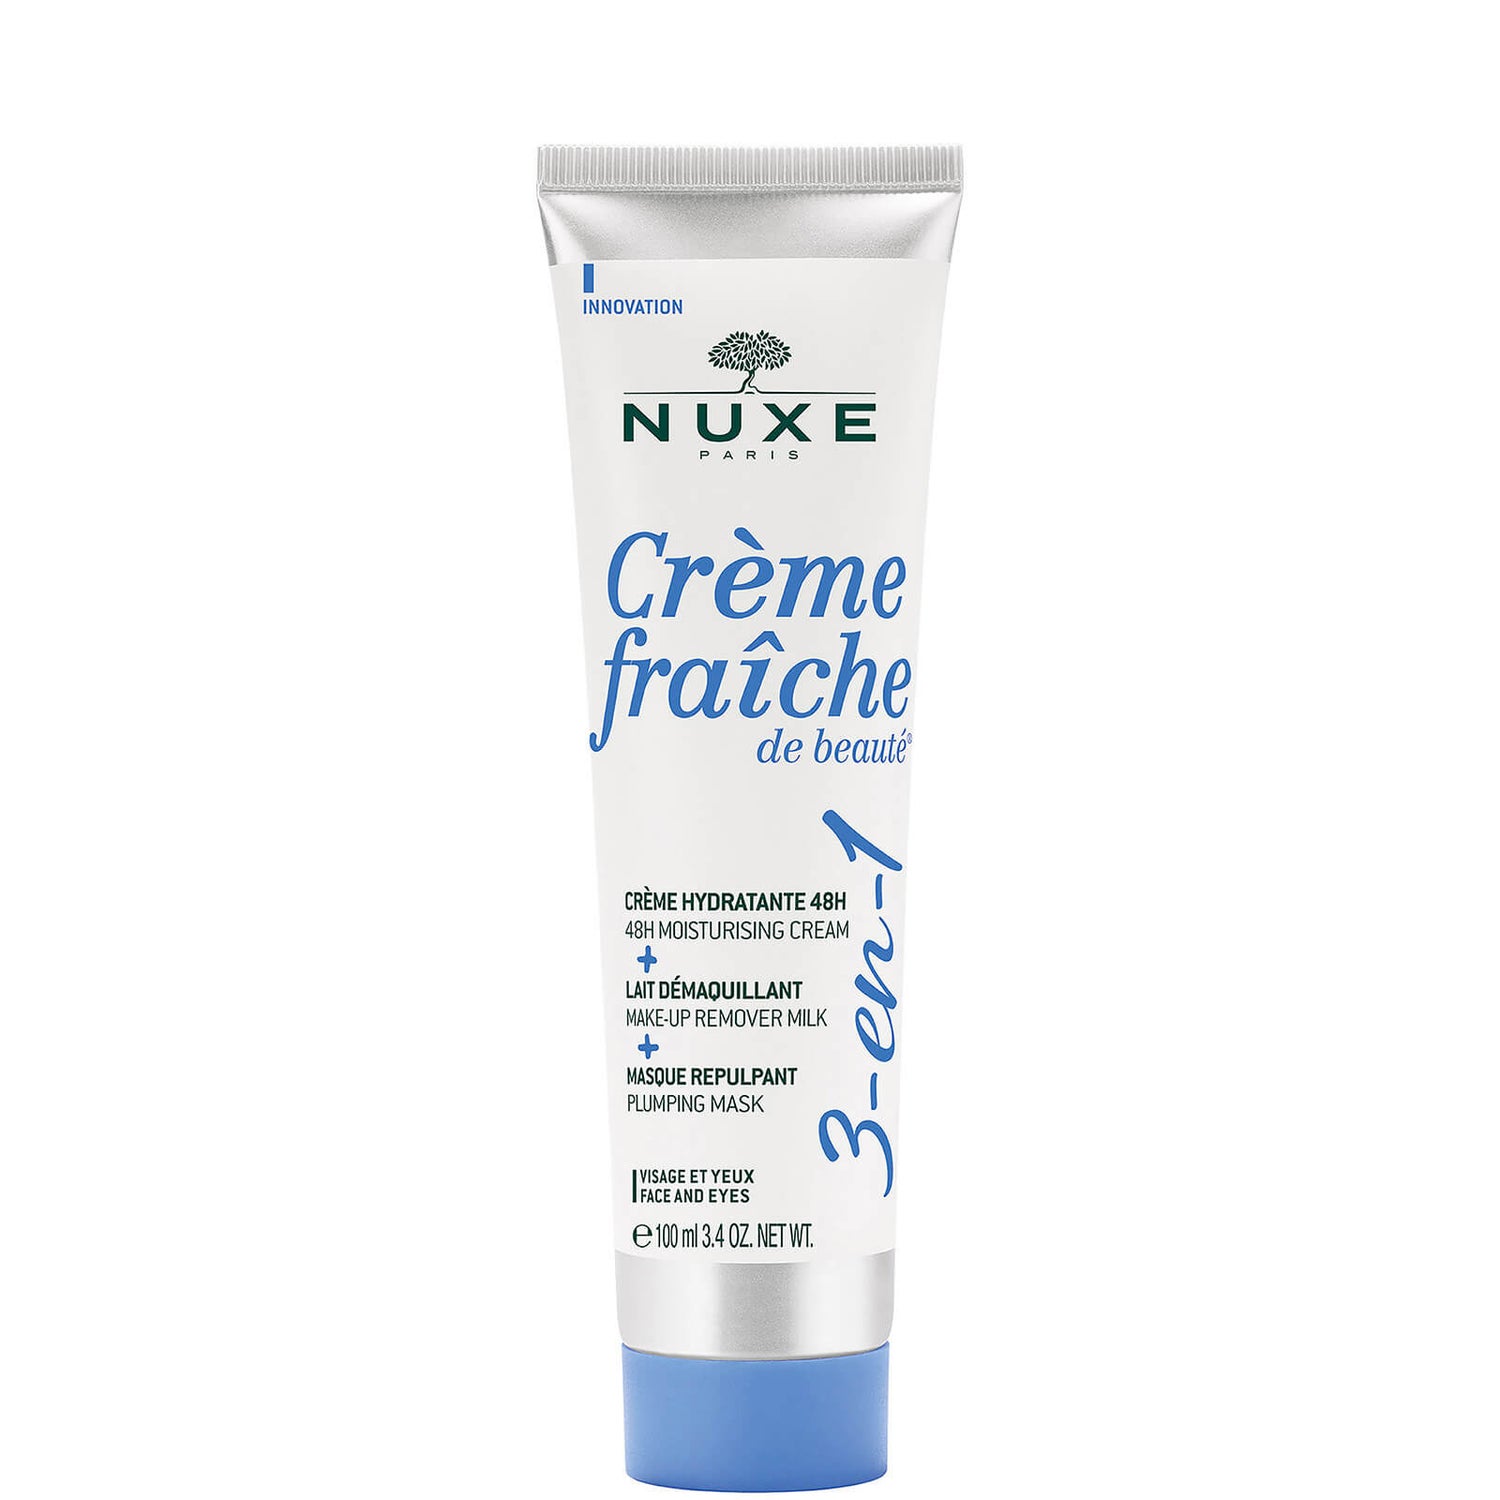 NUXE Crème Fraîche de Beauté Multi-Purpose 3-in-1 Cream 100ml